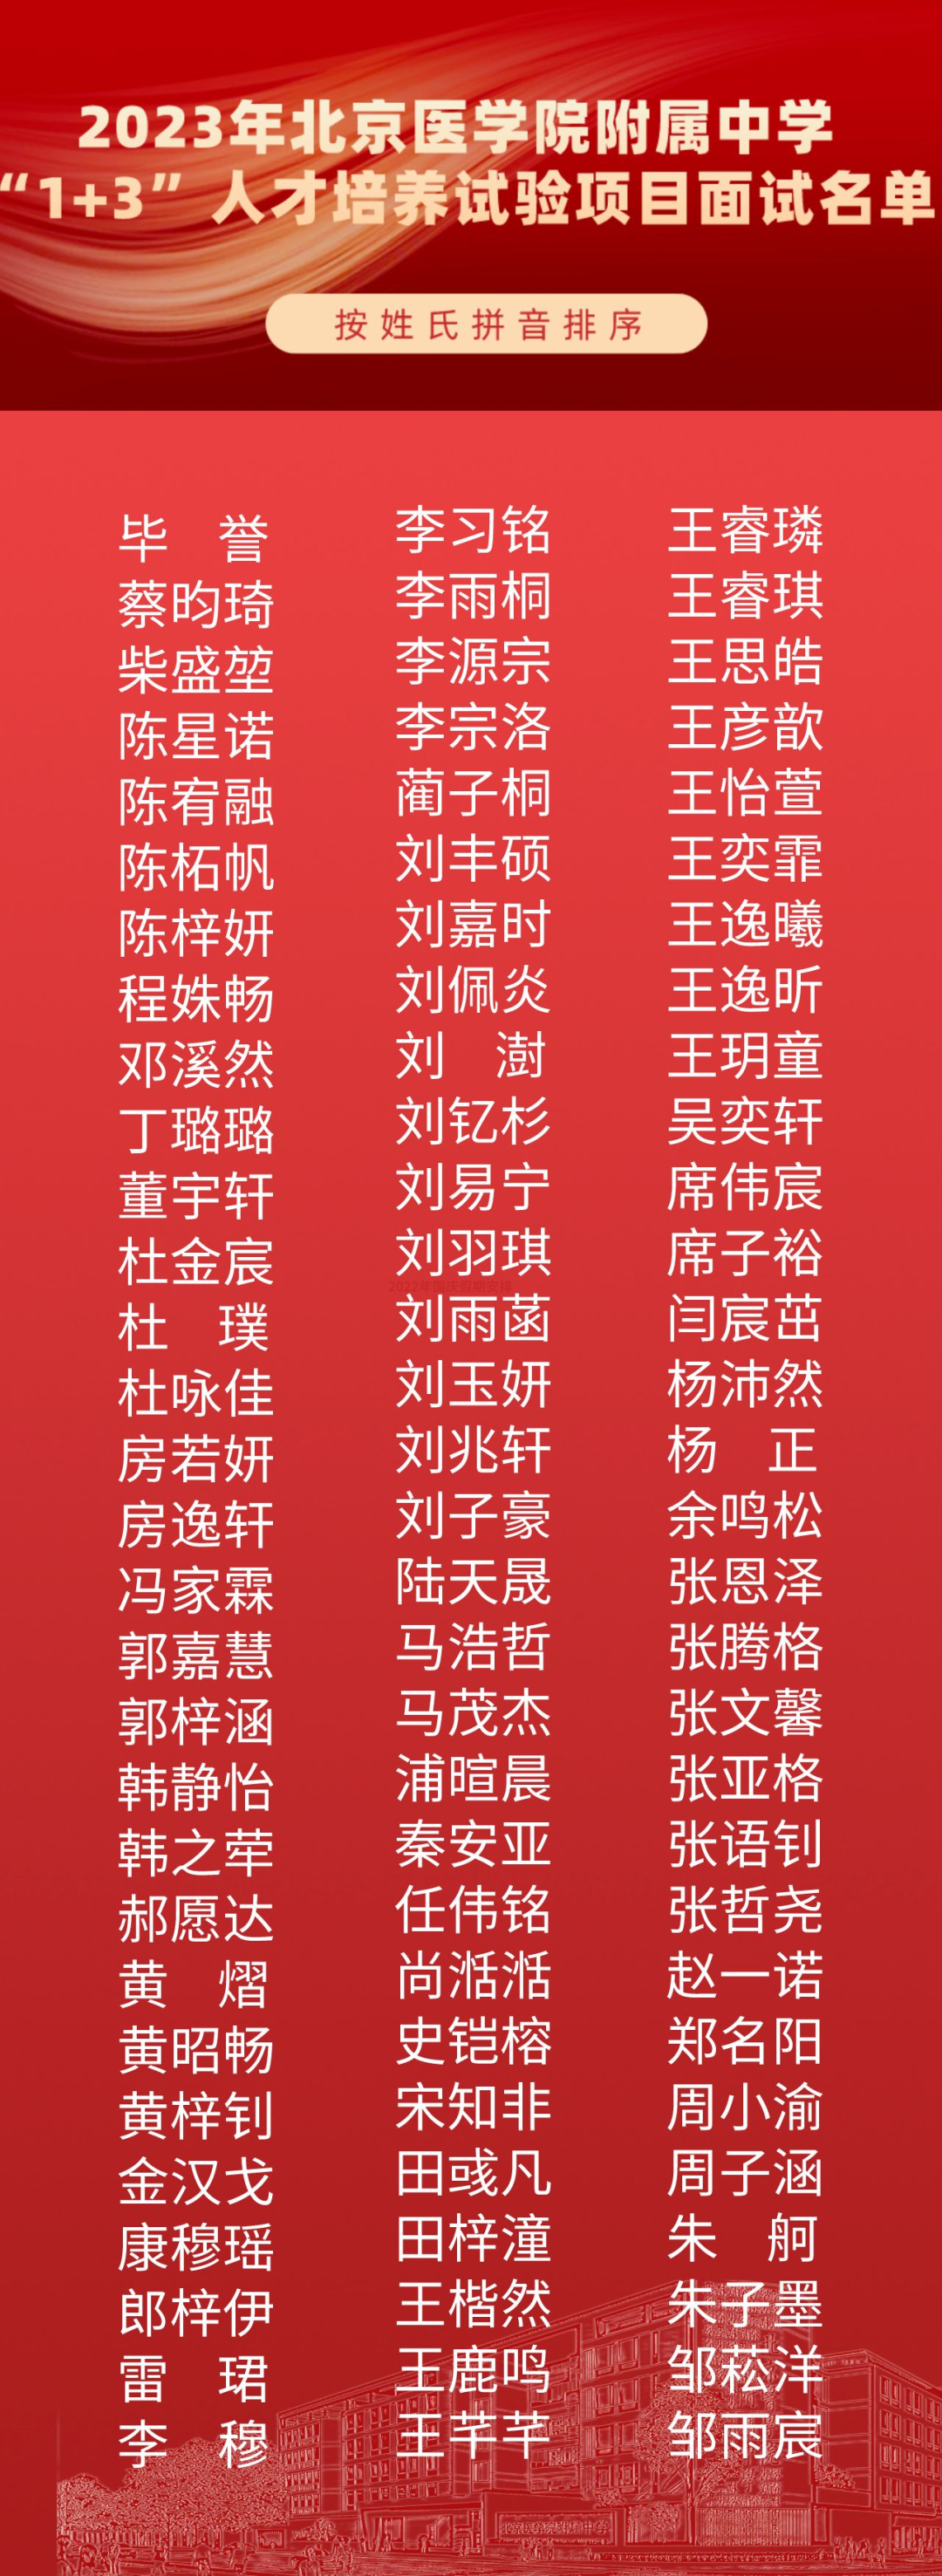 2023年北京医学院附属中学1+3人才培养试验项目面试名单